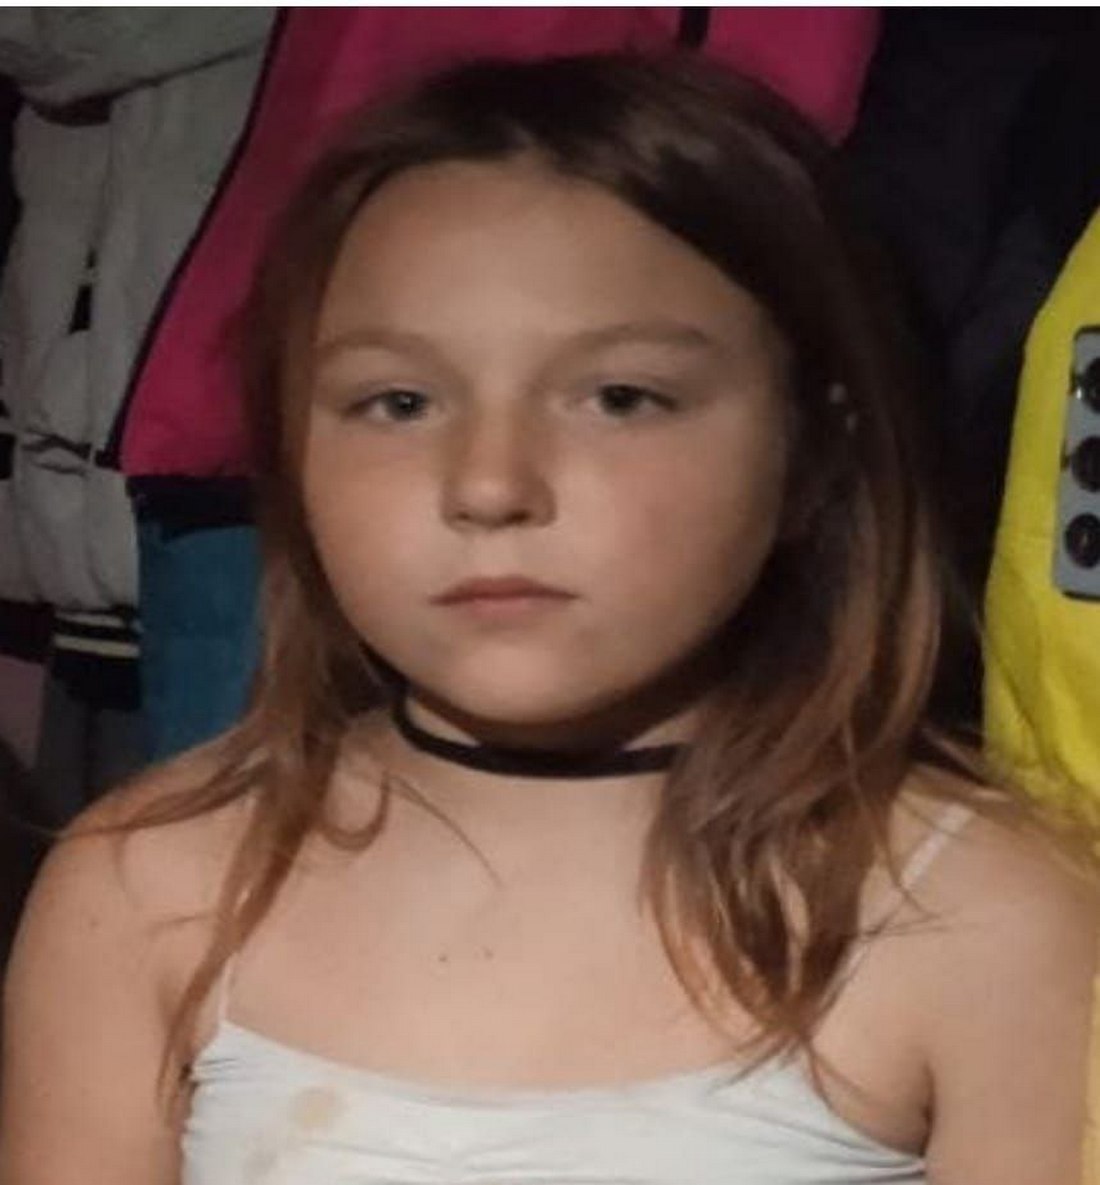 ОНОВЛЕНО. На Дніпропетровщині зникла безвісти 10-річна дівчинка. Допоможіть знайти!